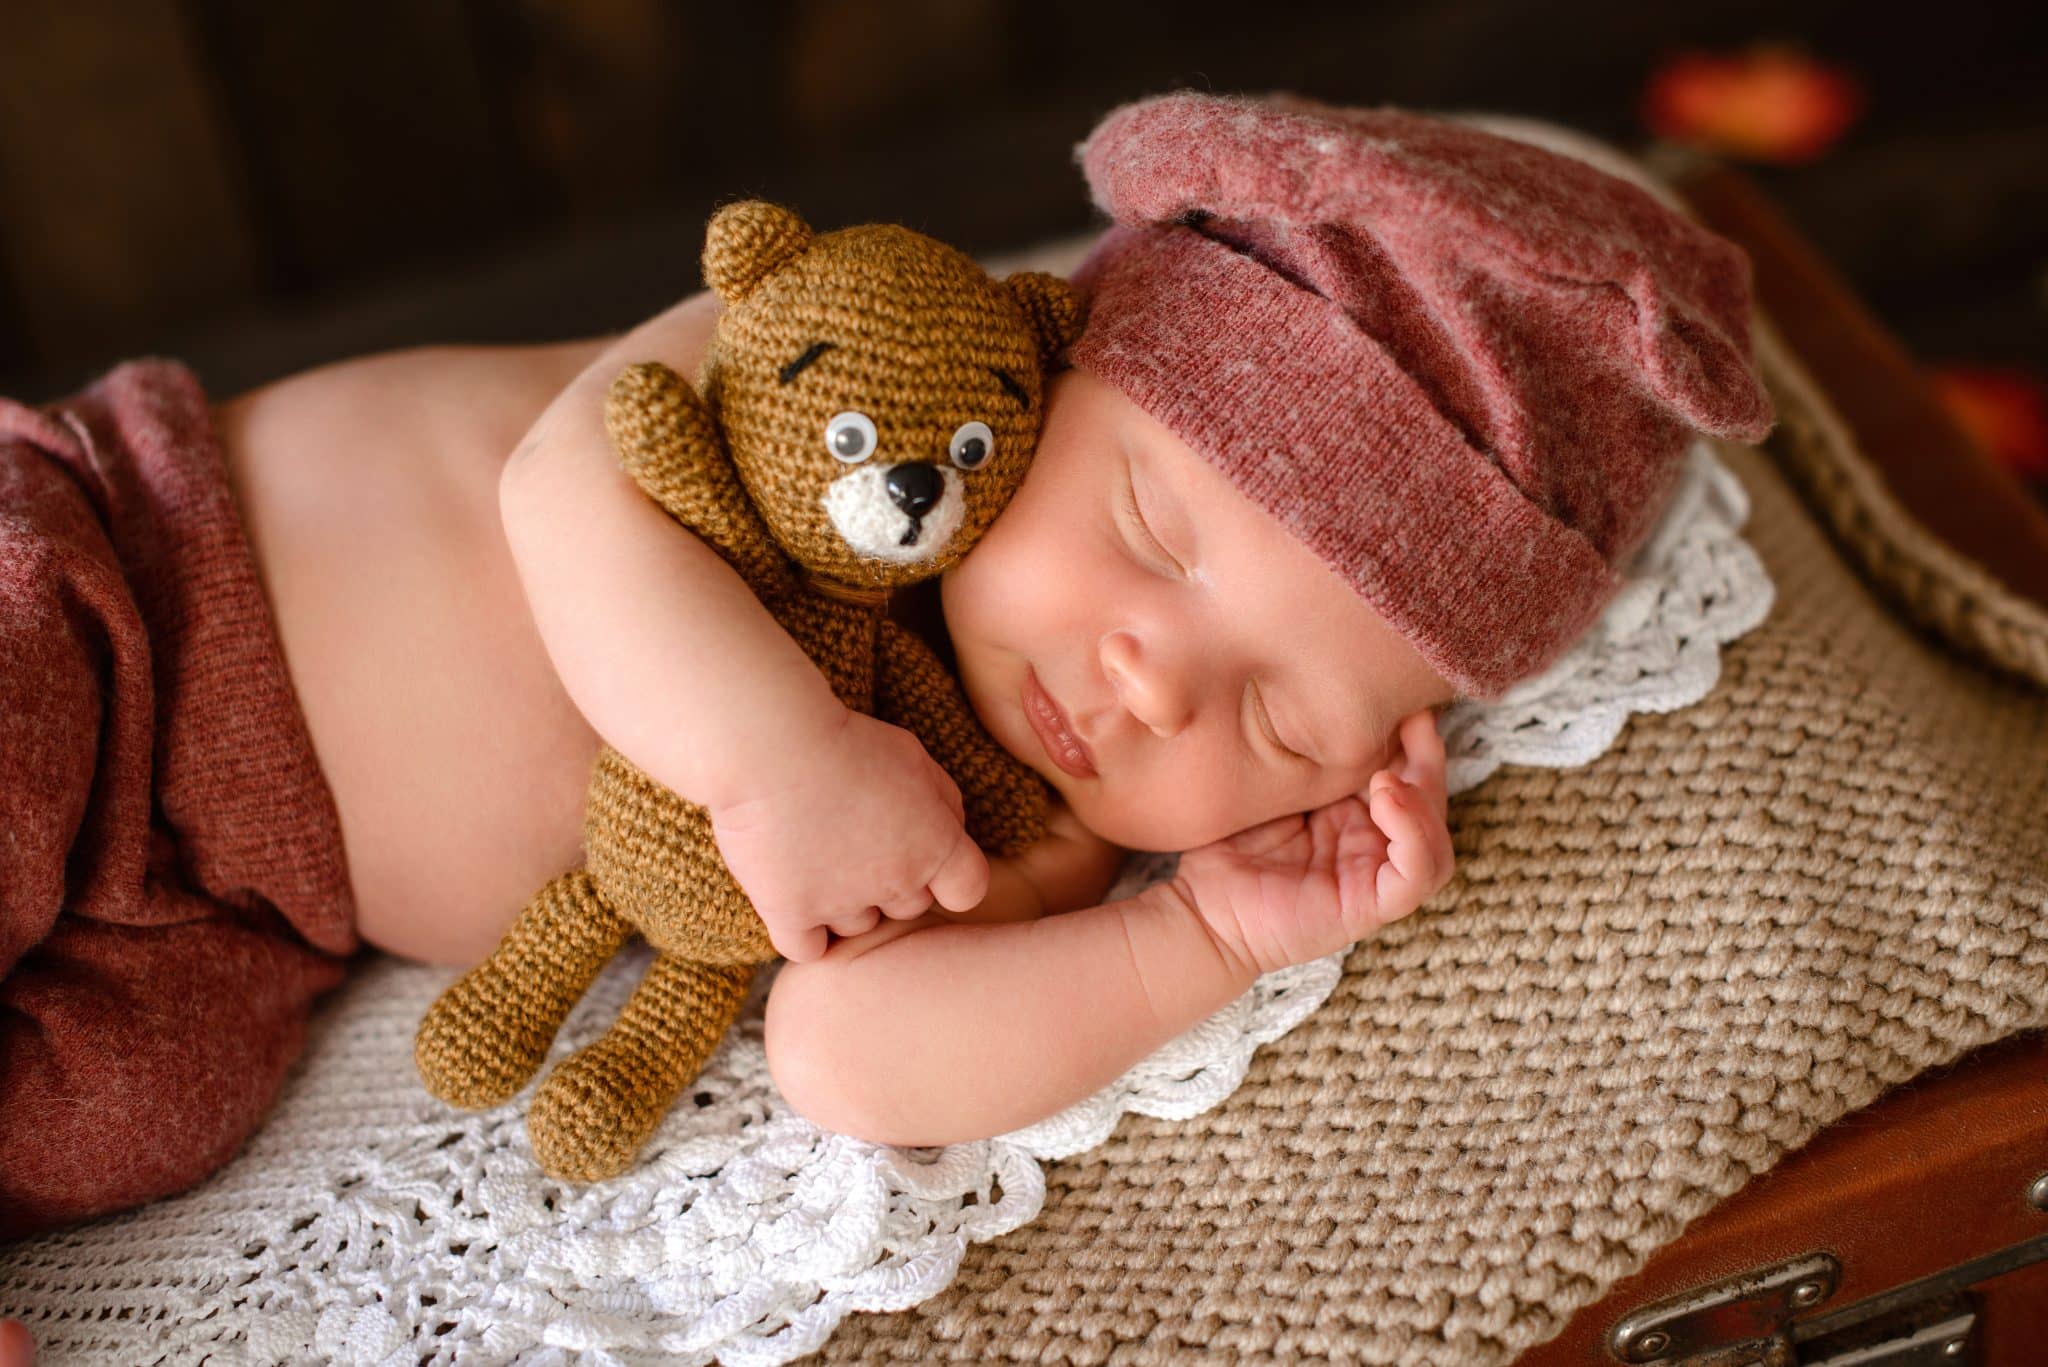 En quoi consiste exactement un programme de coaching pour le sommeil du bébé ?